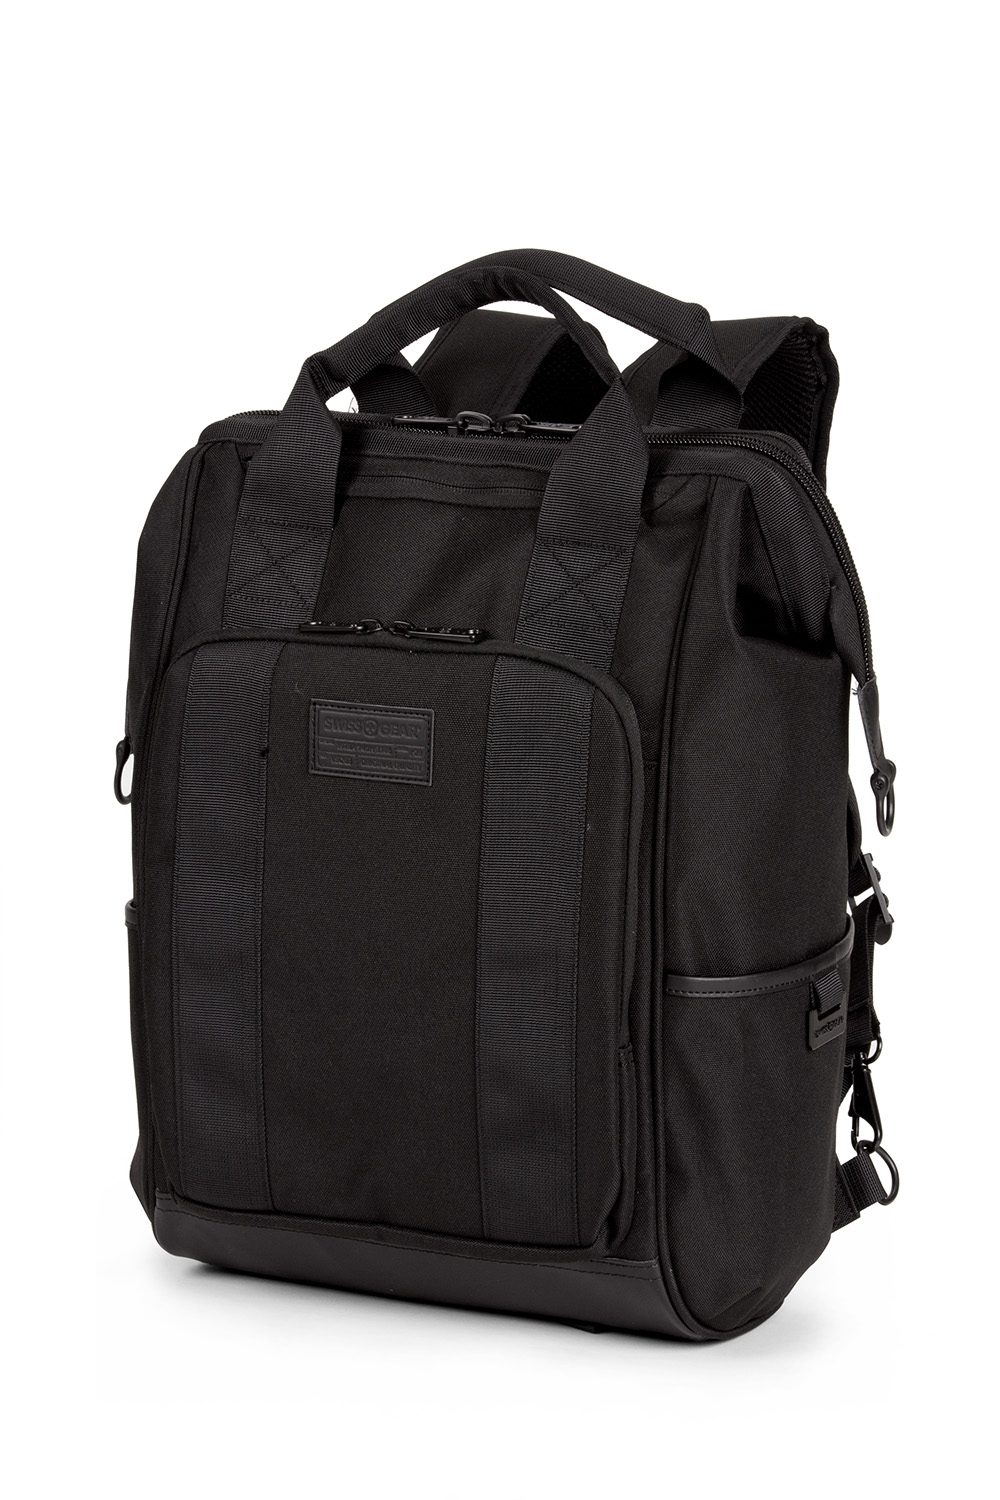 SwissGear Backpack Black